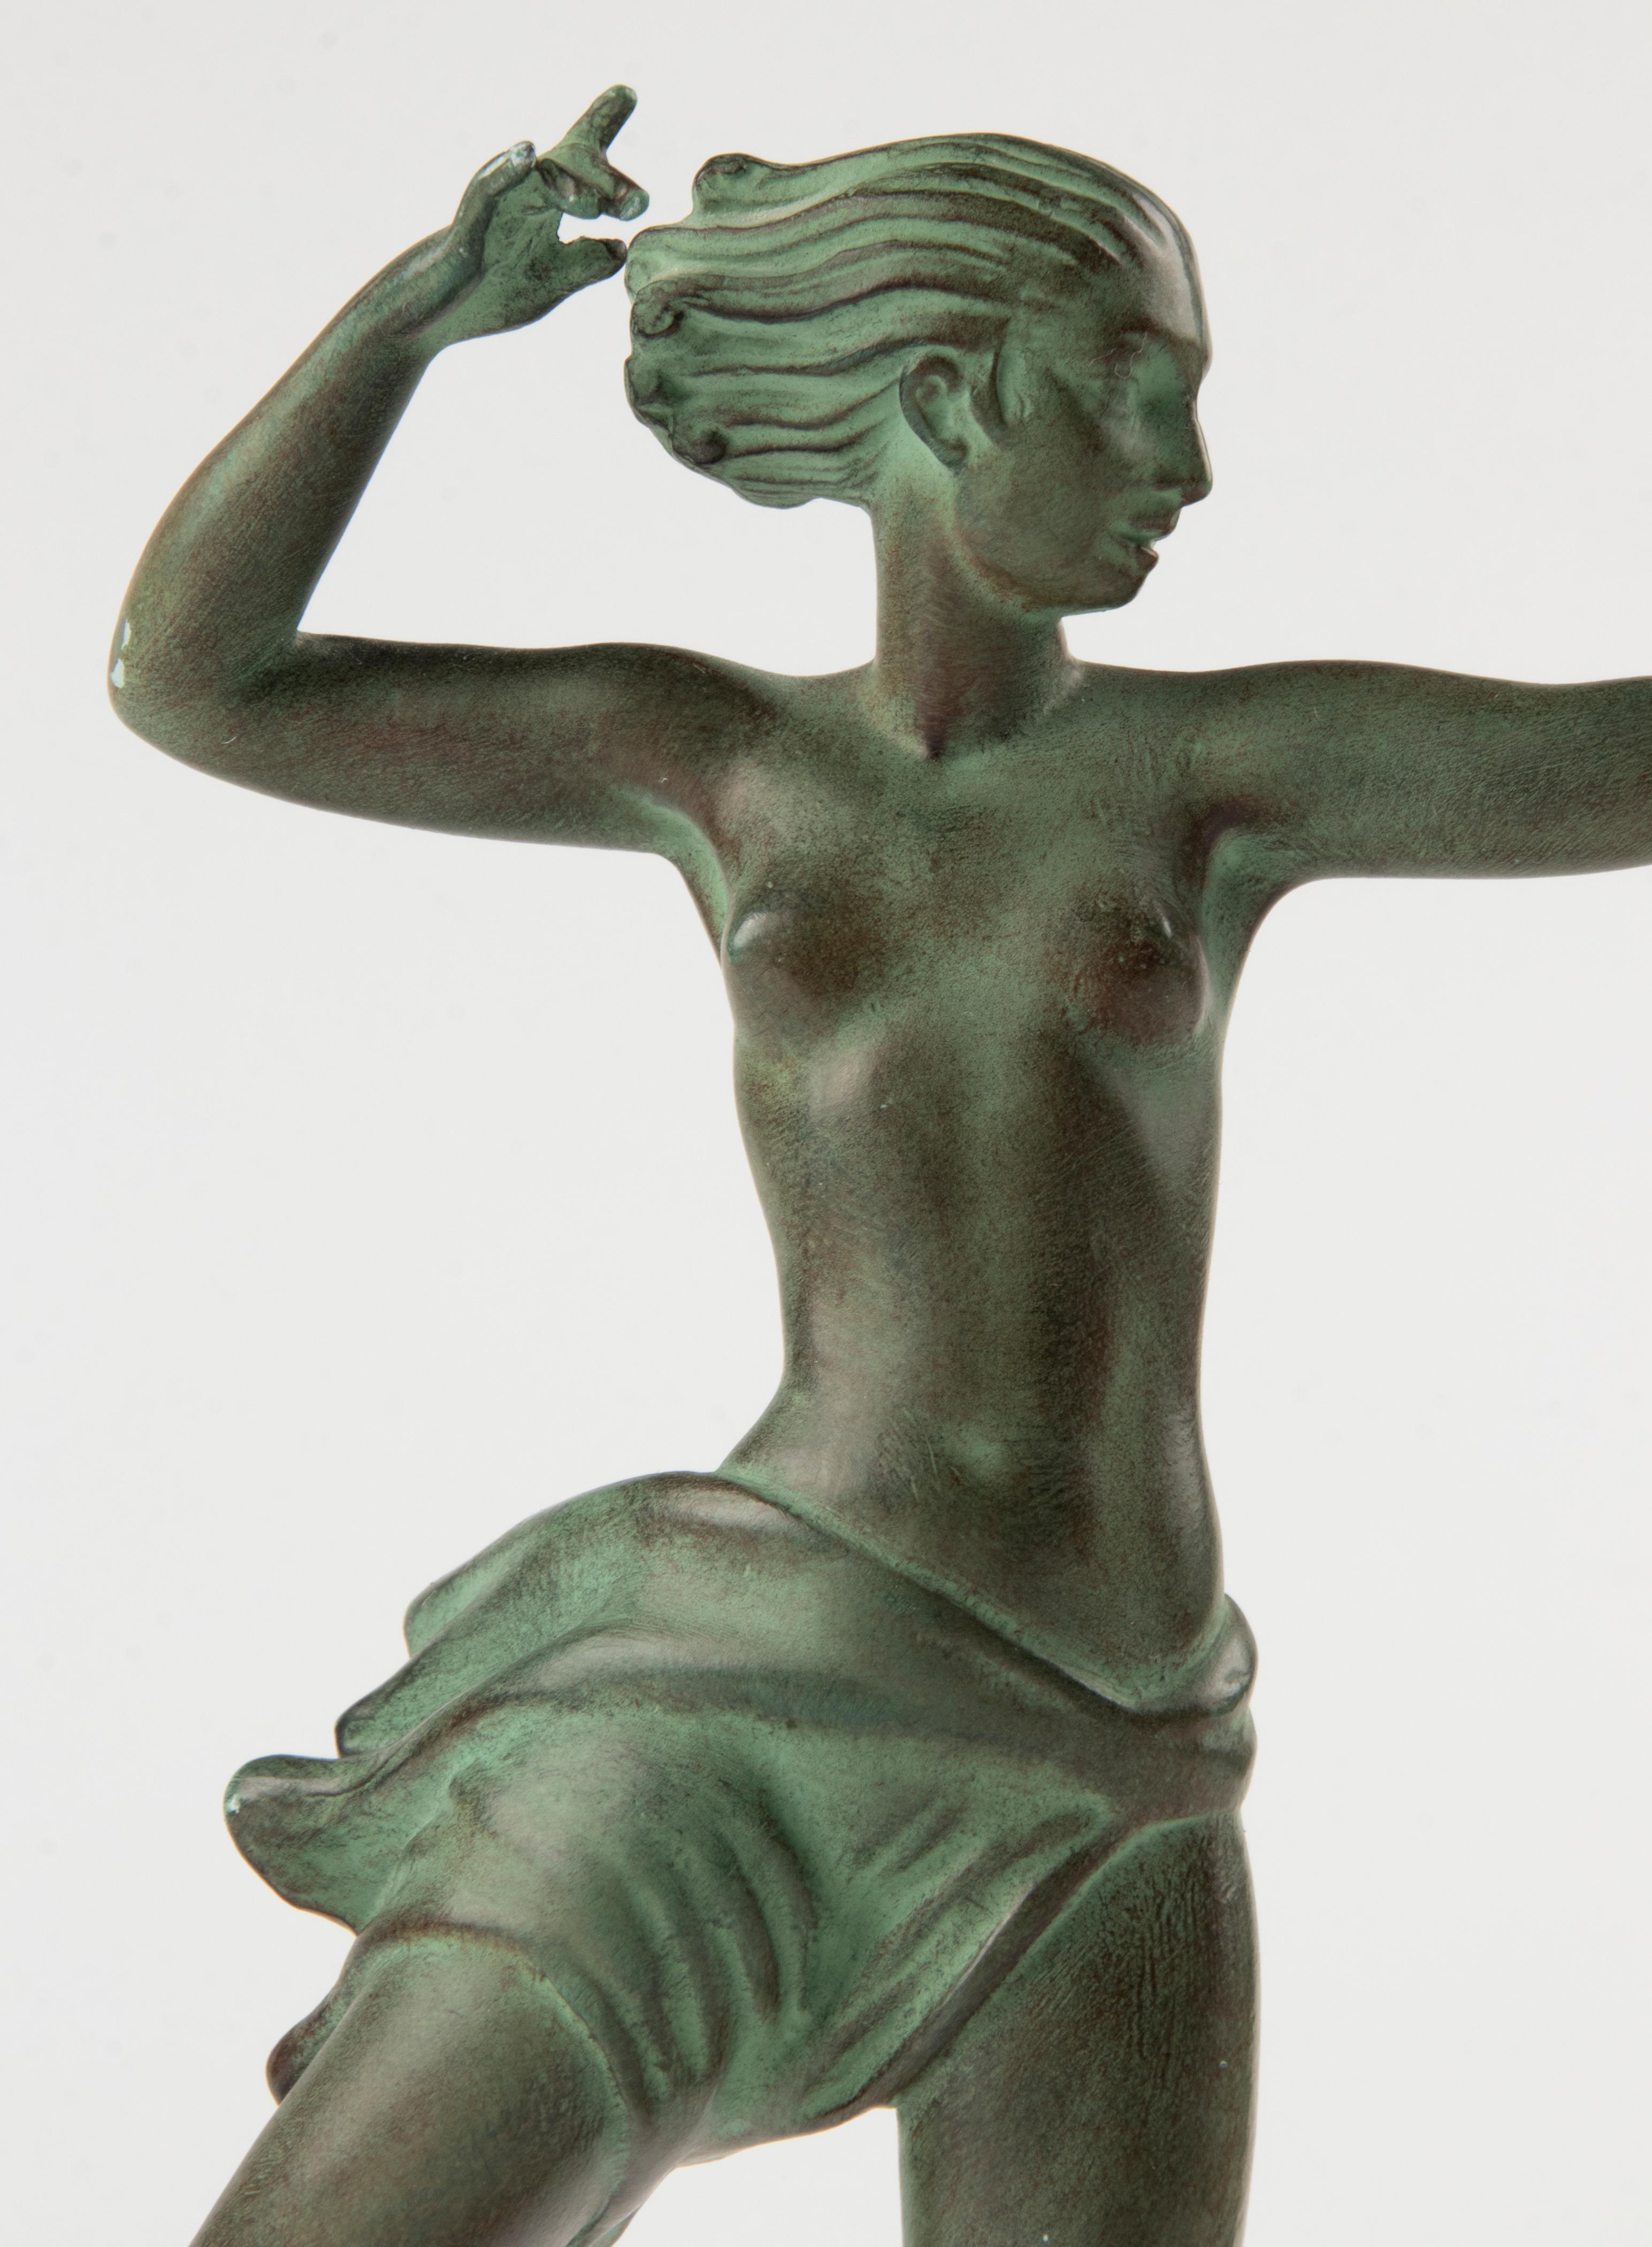 Zinc brut Sculpture Art déco française des années 1930 de Jean de MarCo du Studio Max Le Verrier